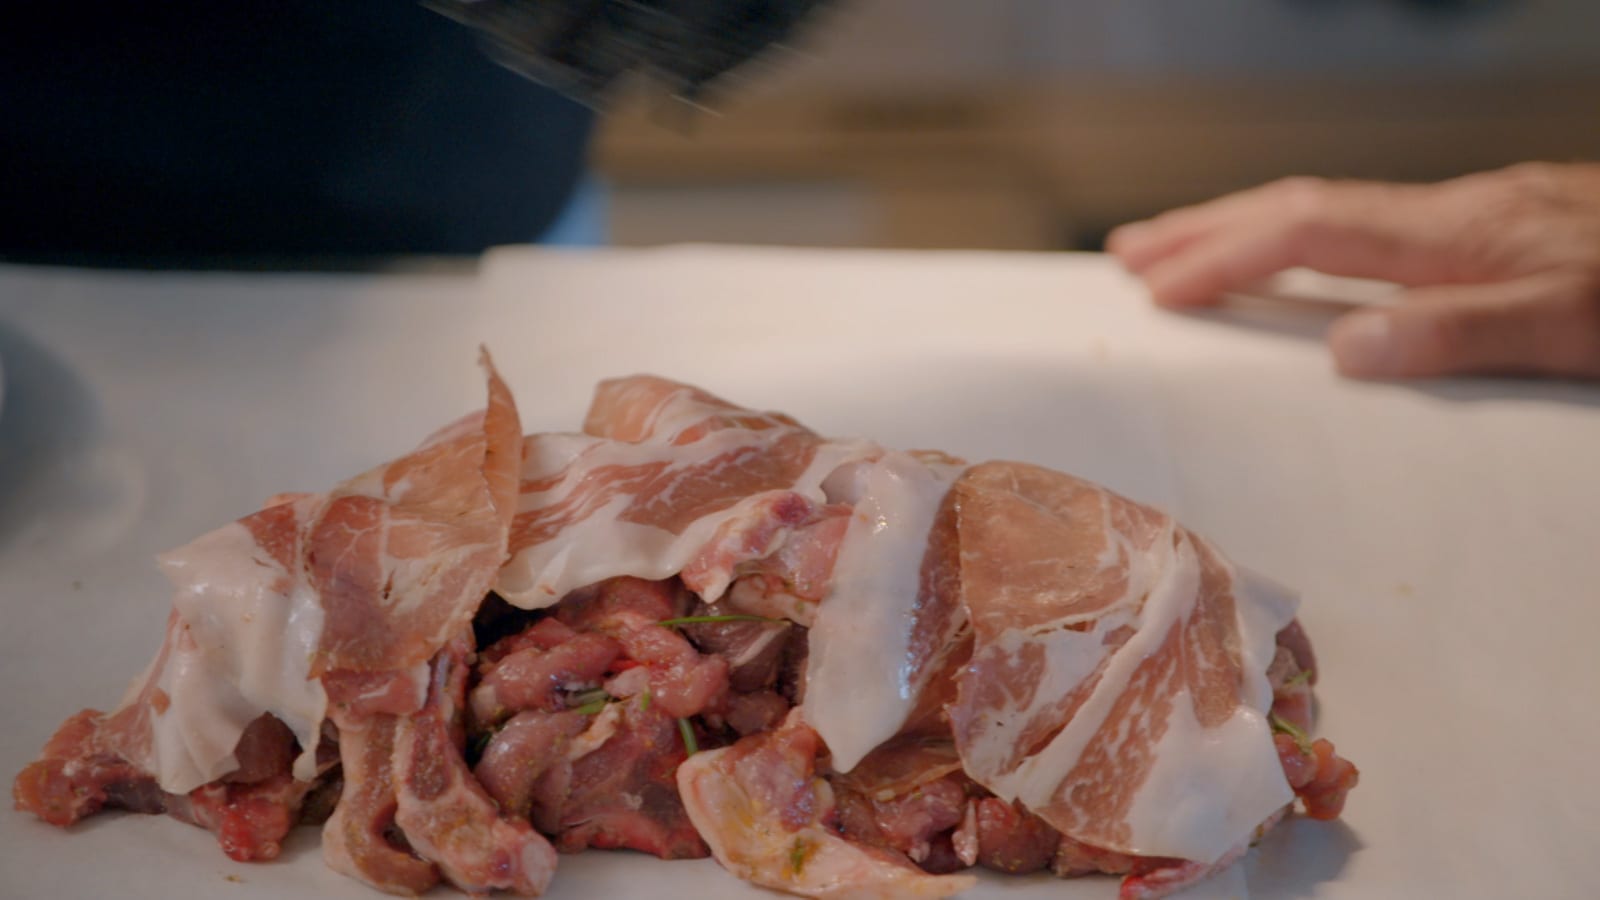 بإيطاليا.. يتمتع هذا اللحم بنعومة لا تصدق بعد لفه وطهيه داخل الصلصال